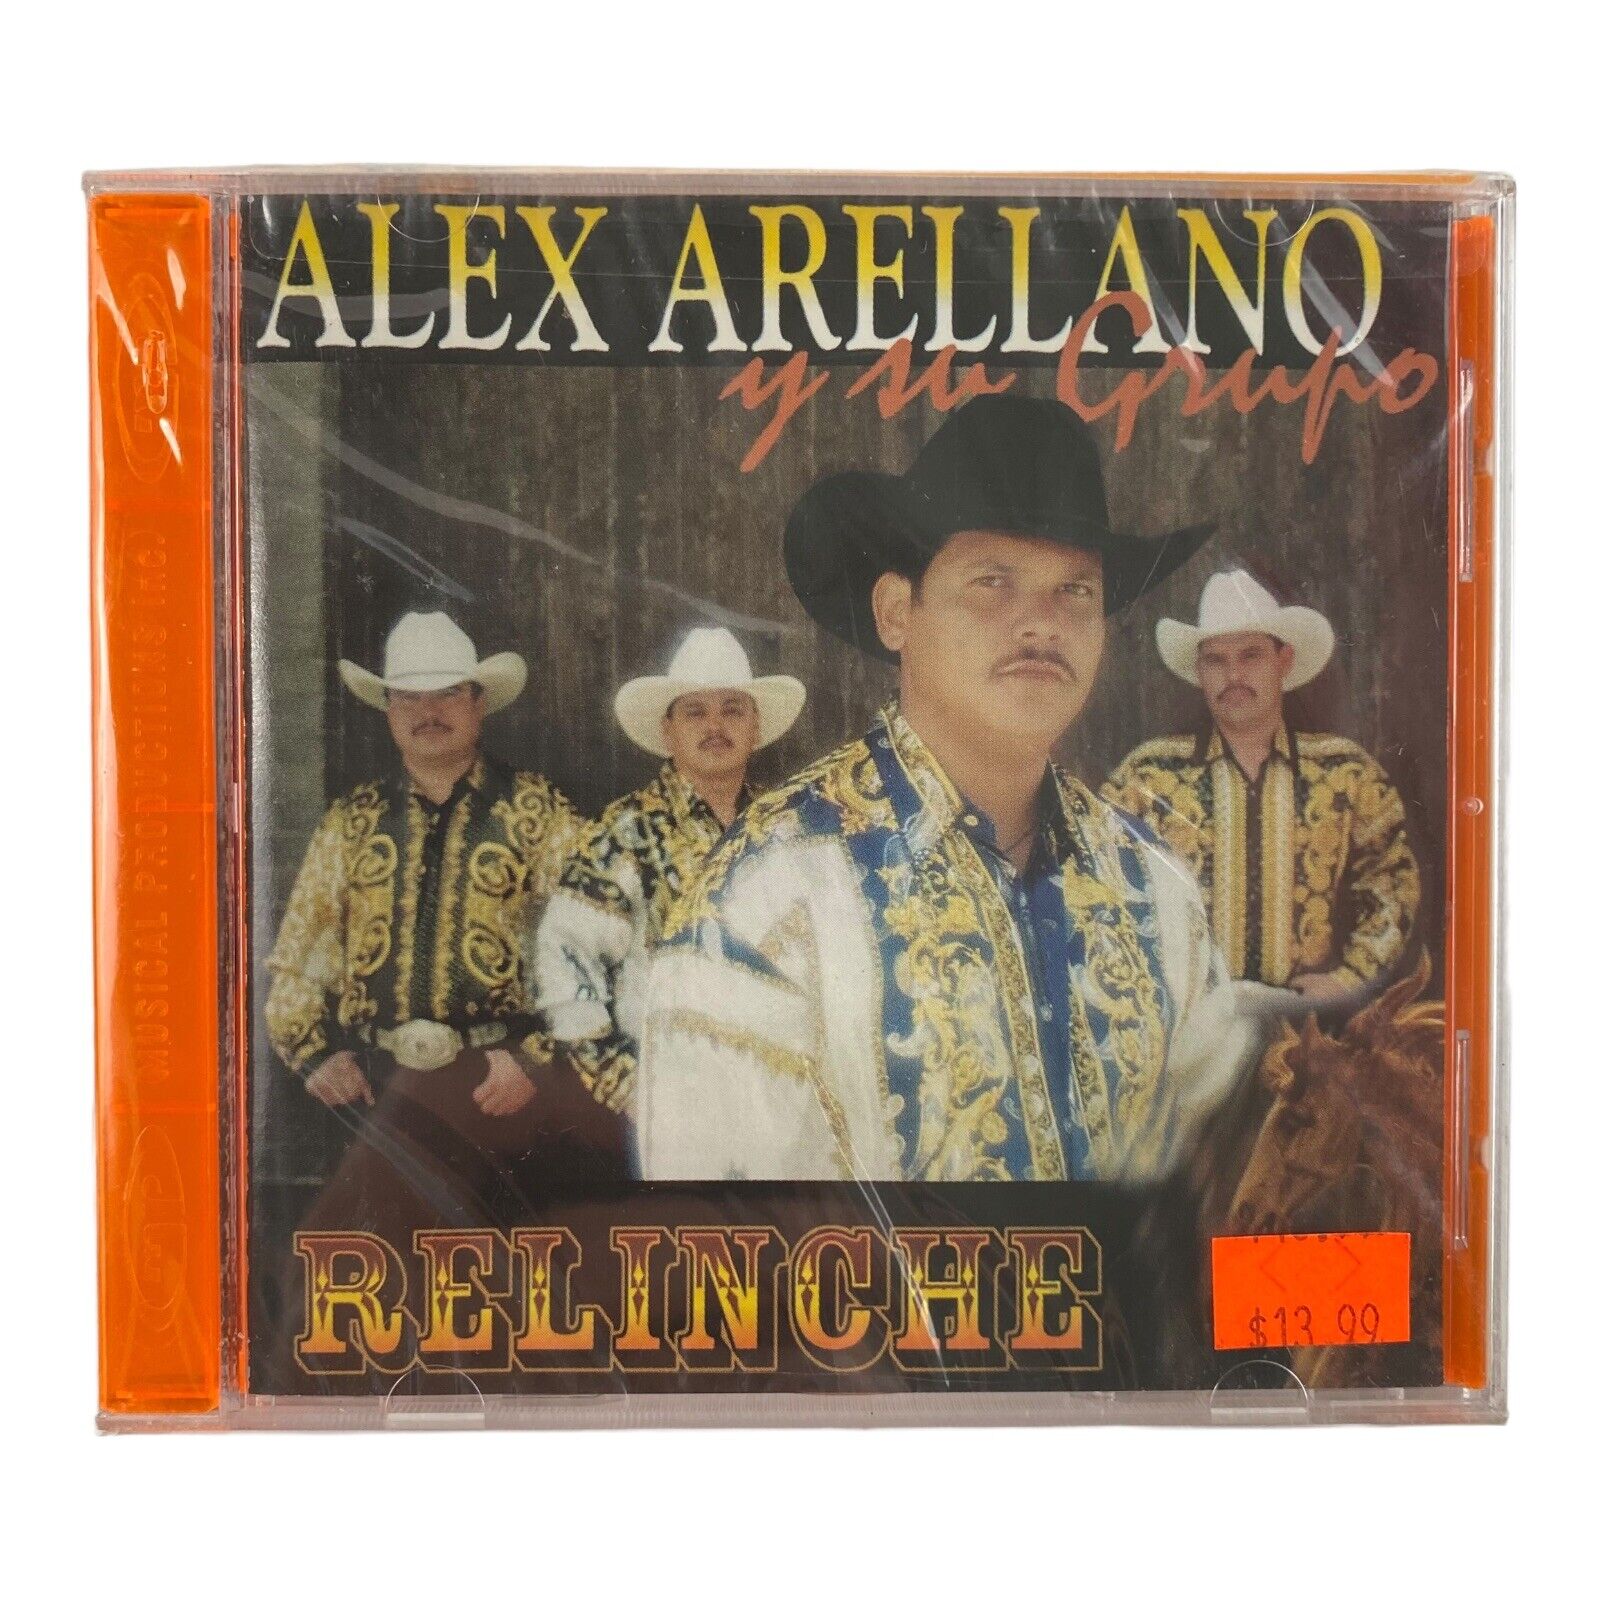 Alex Arellano Y Su Grupo Relinche  (CD, 1999 Sony Disco) Spanish/Latin - Sealed